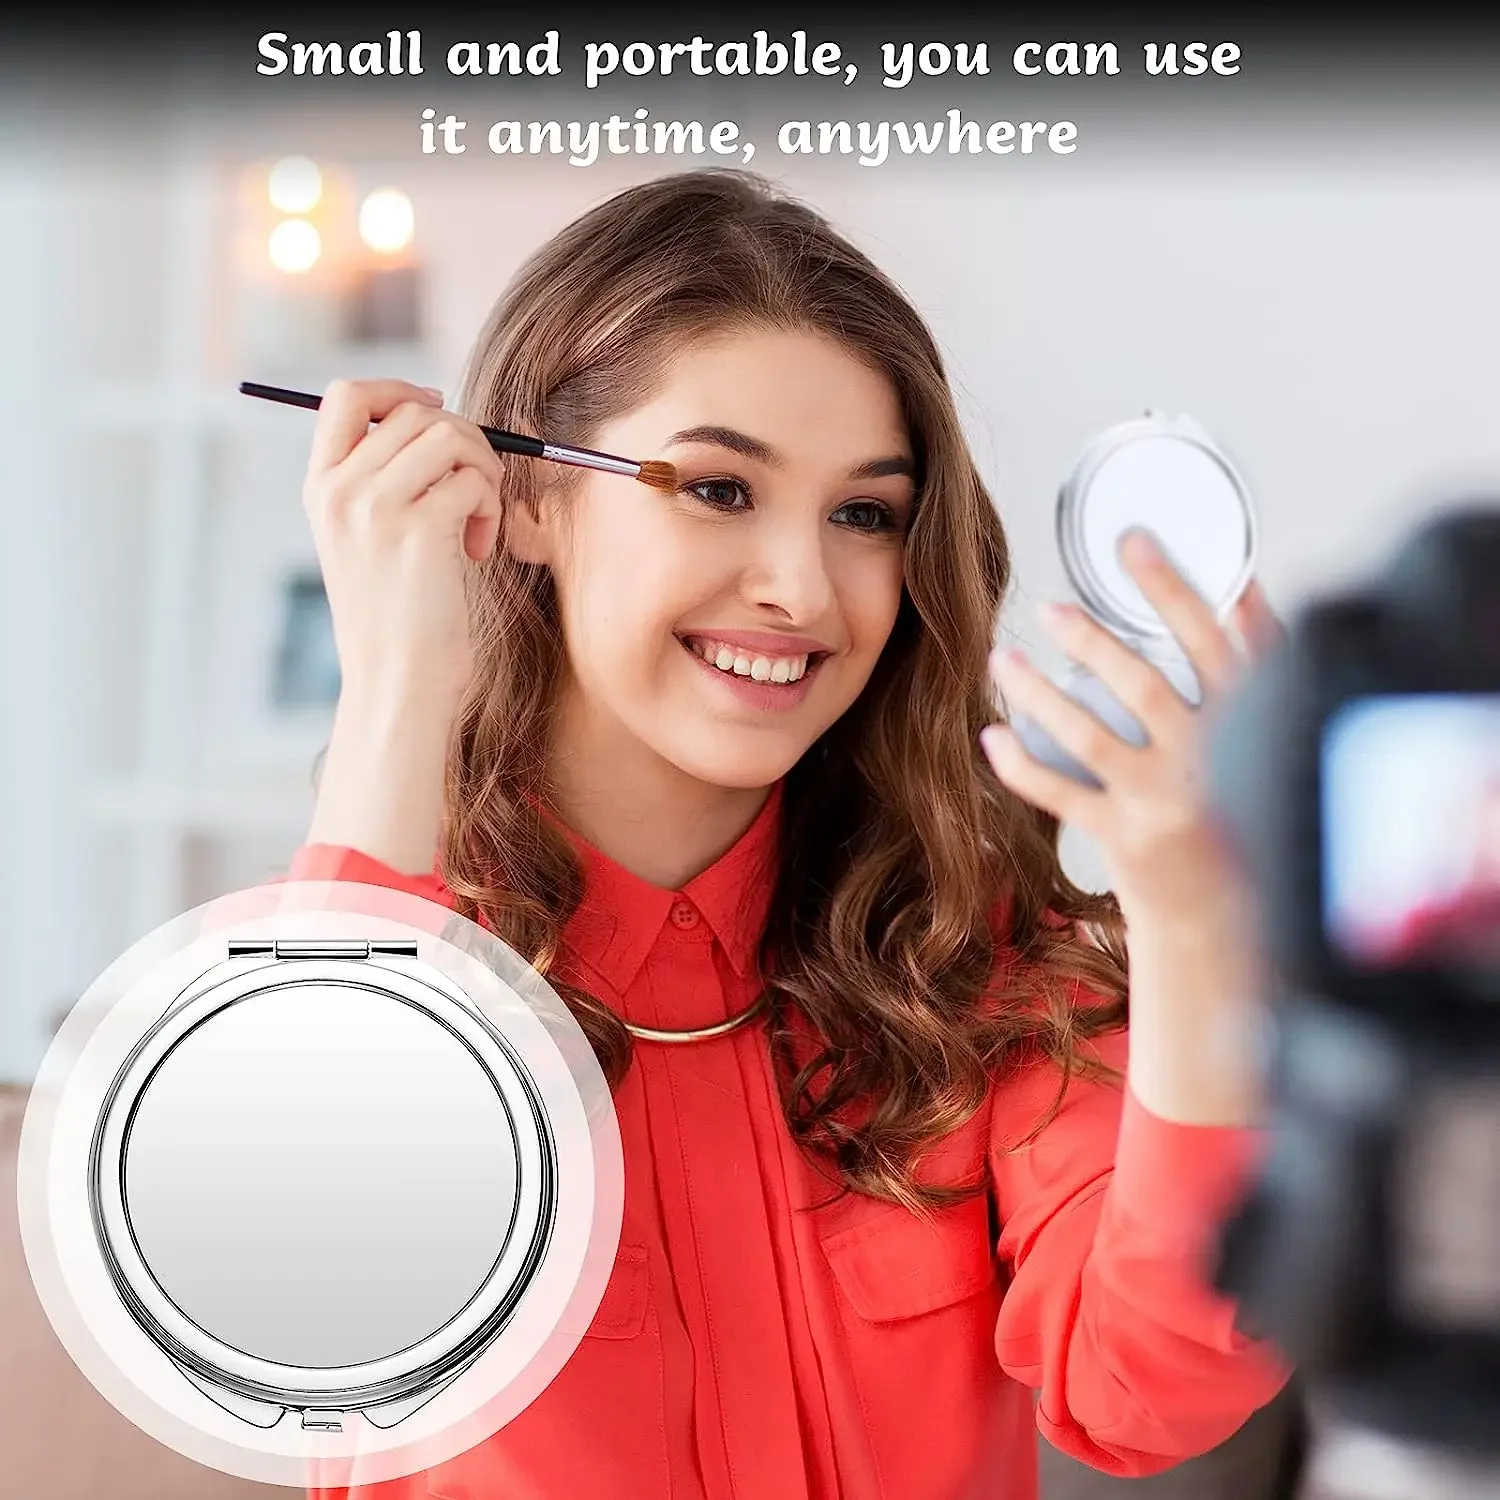 12 teile/los Sublimation rohlinge Metall tasche Kompakt spiegel Reise Make-up Spiegel Smart Spiegel für Frauen Männer Heimreise verwenden